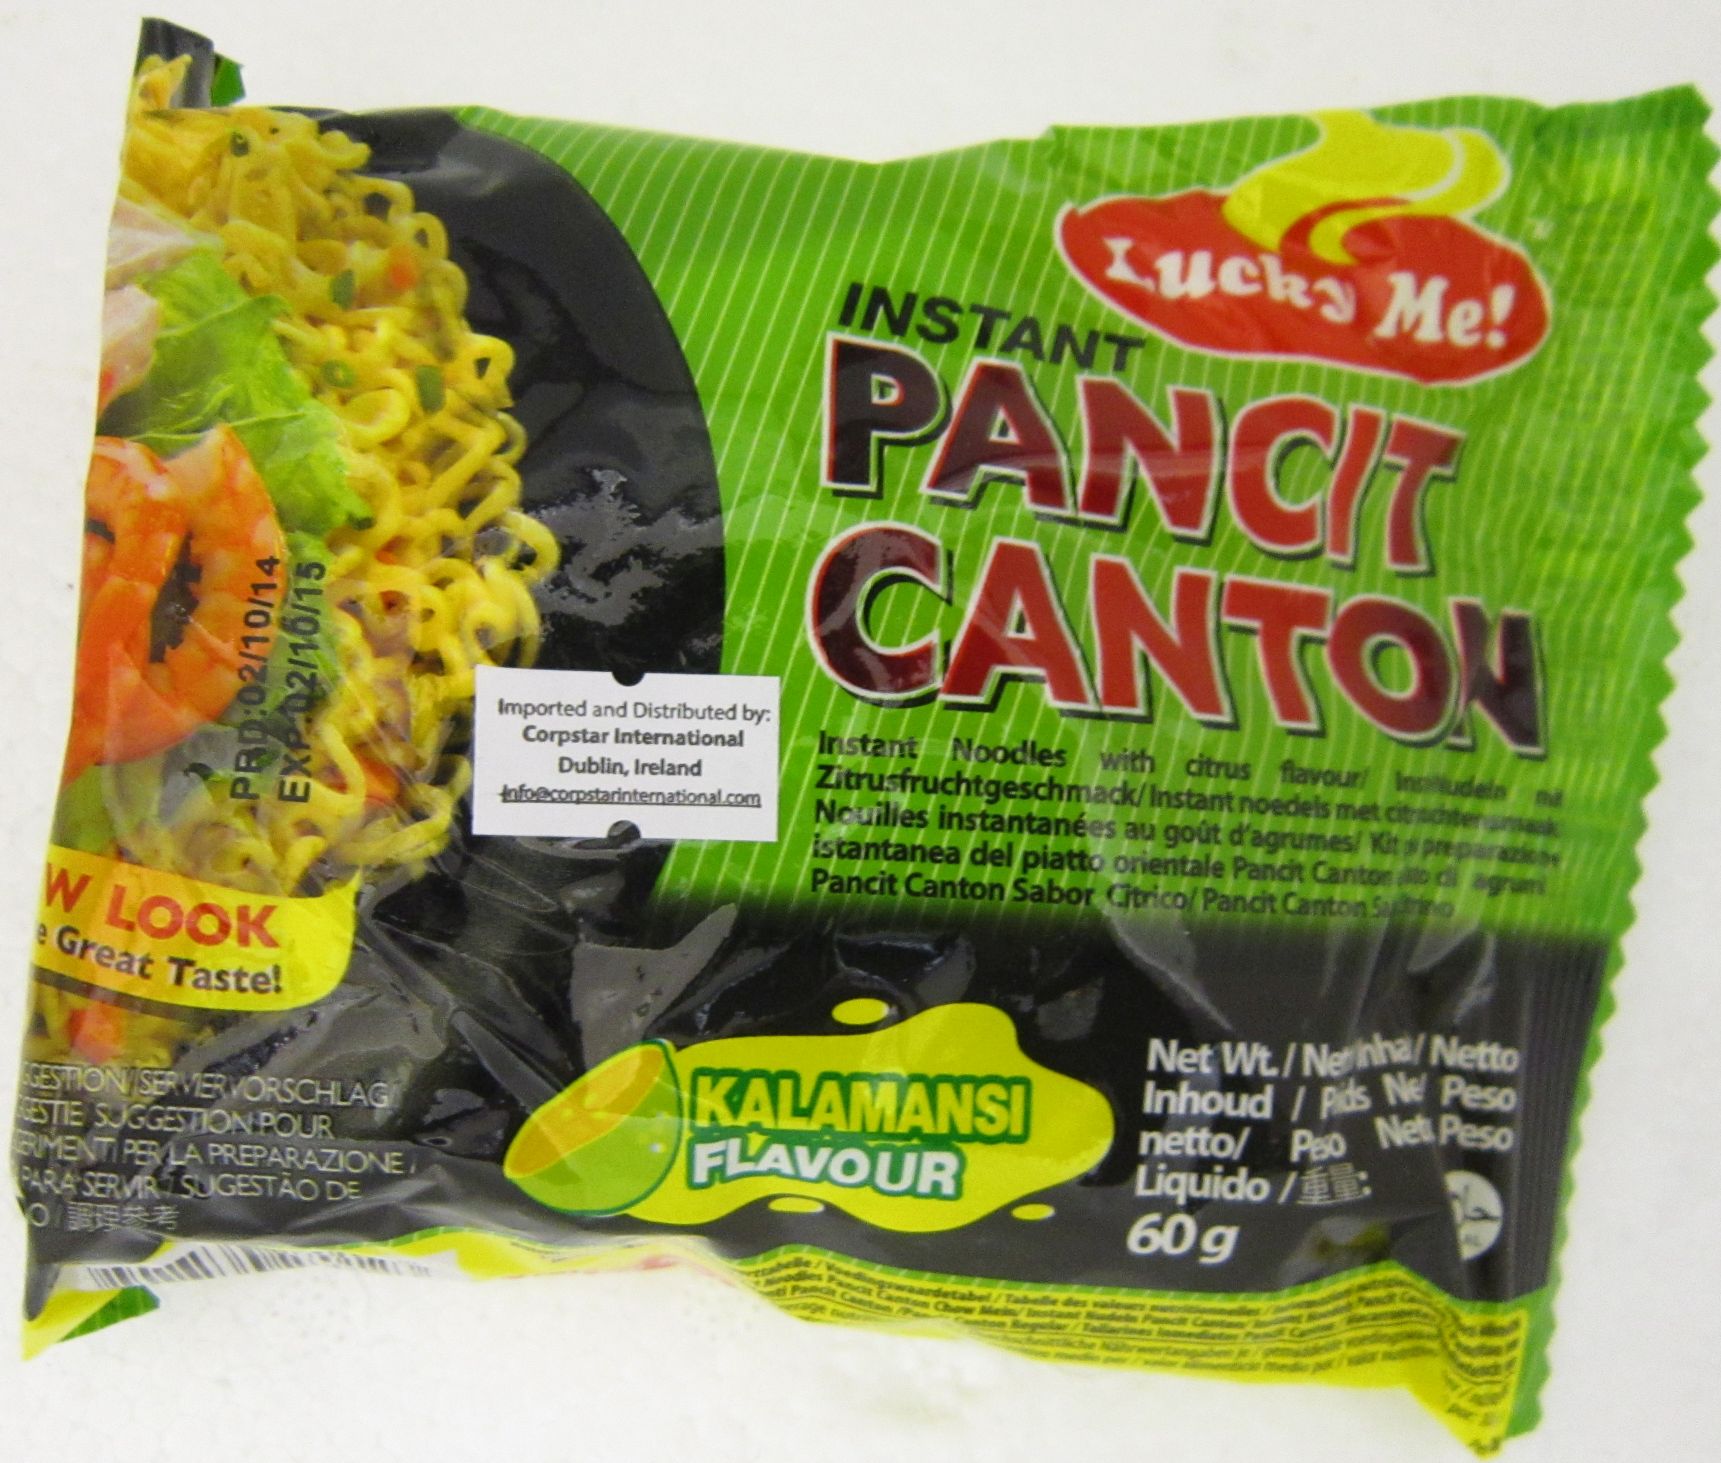 Lucky Me Pancit Canton Kalamansi Flavour Image